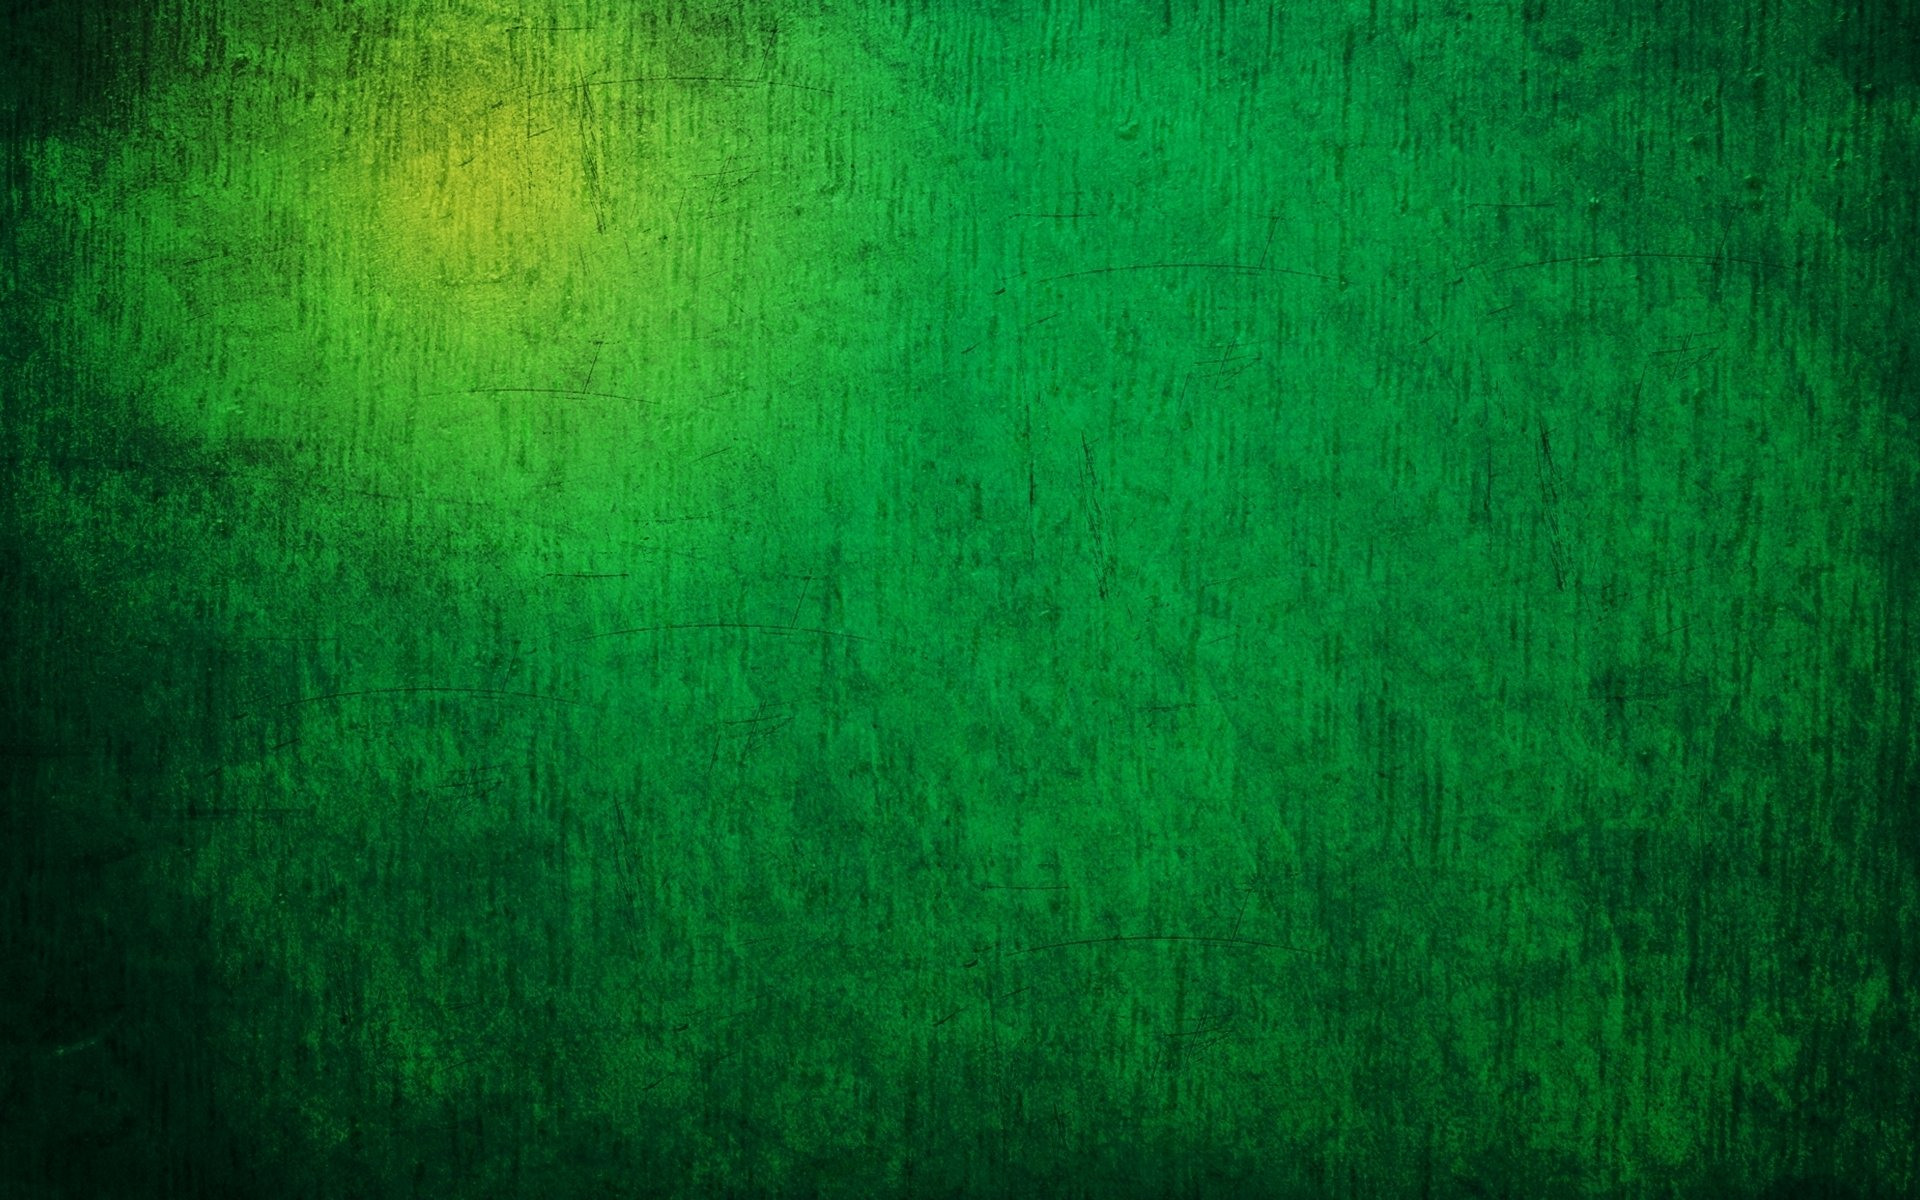 Фото липтона на зеленом фоне